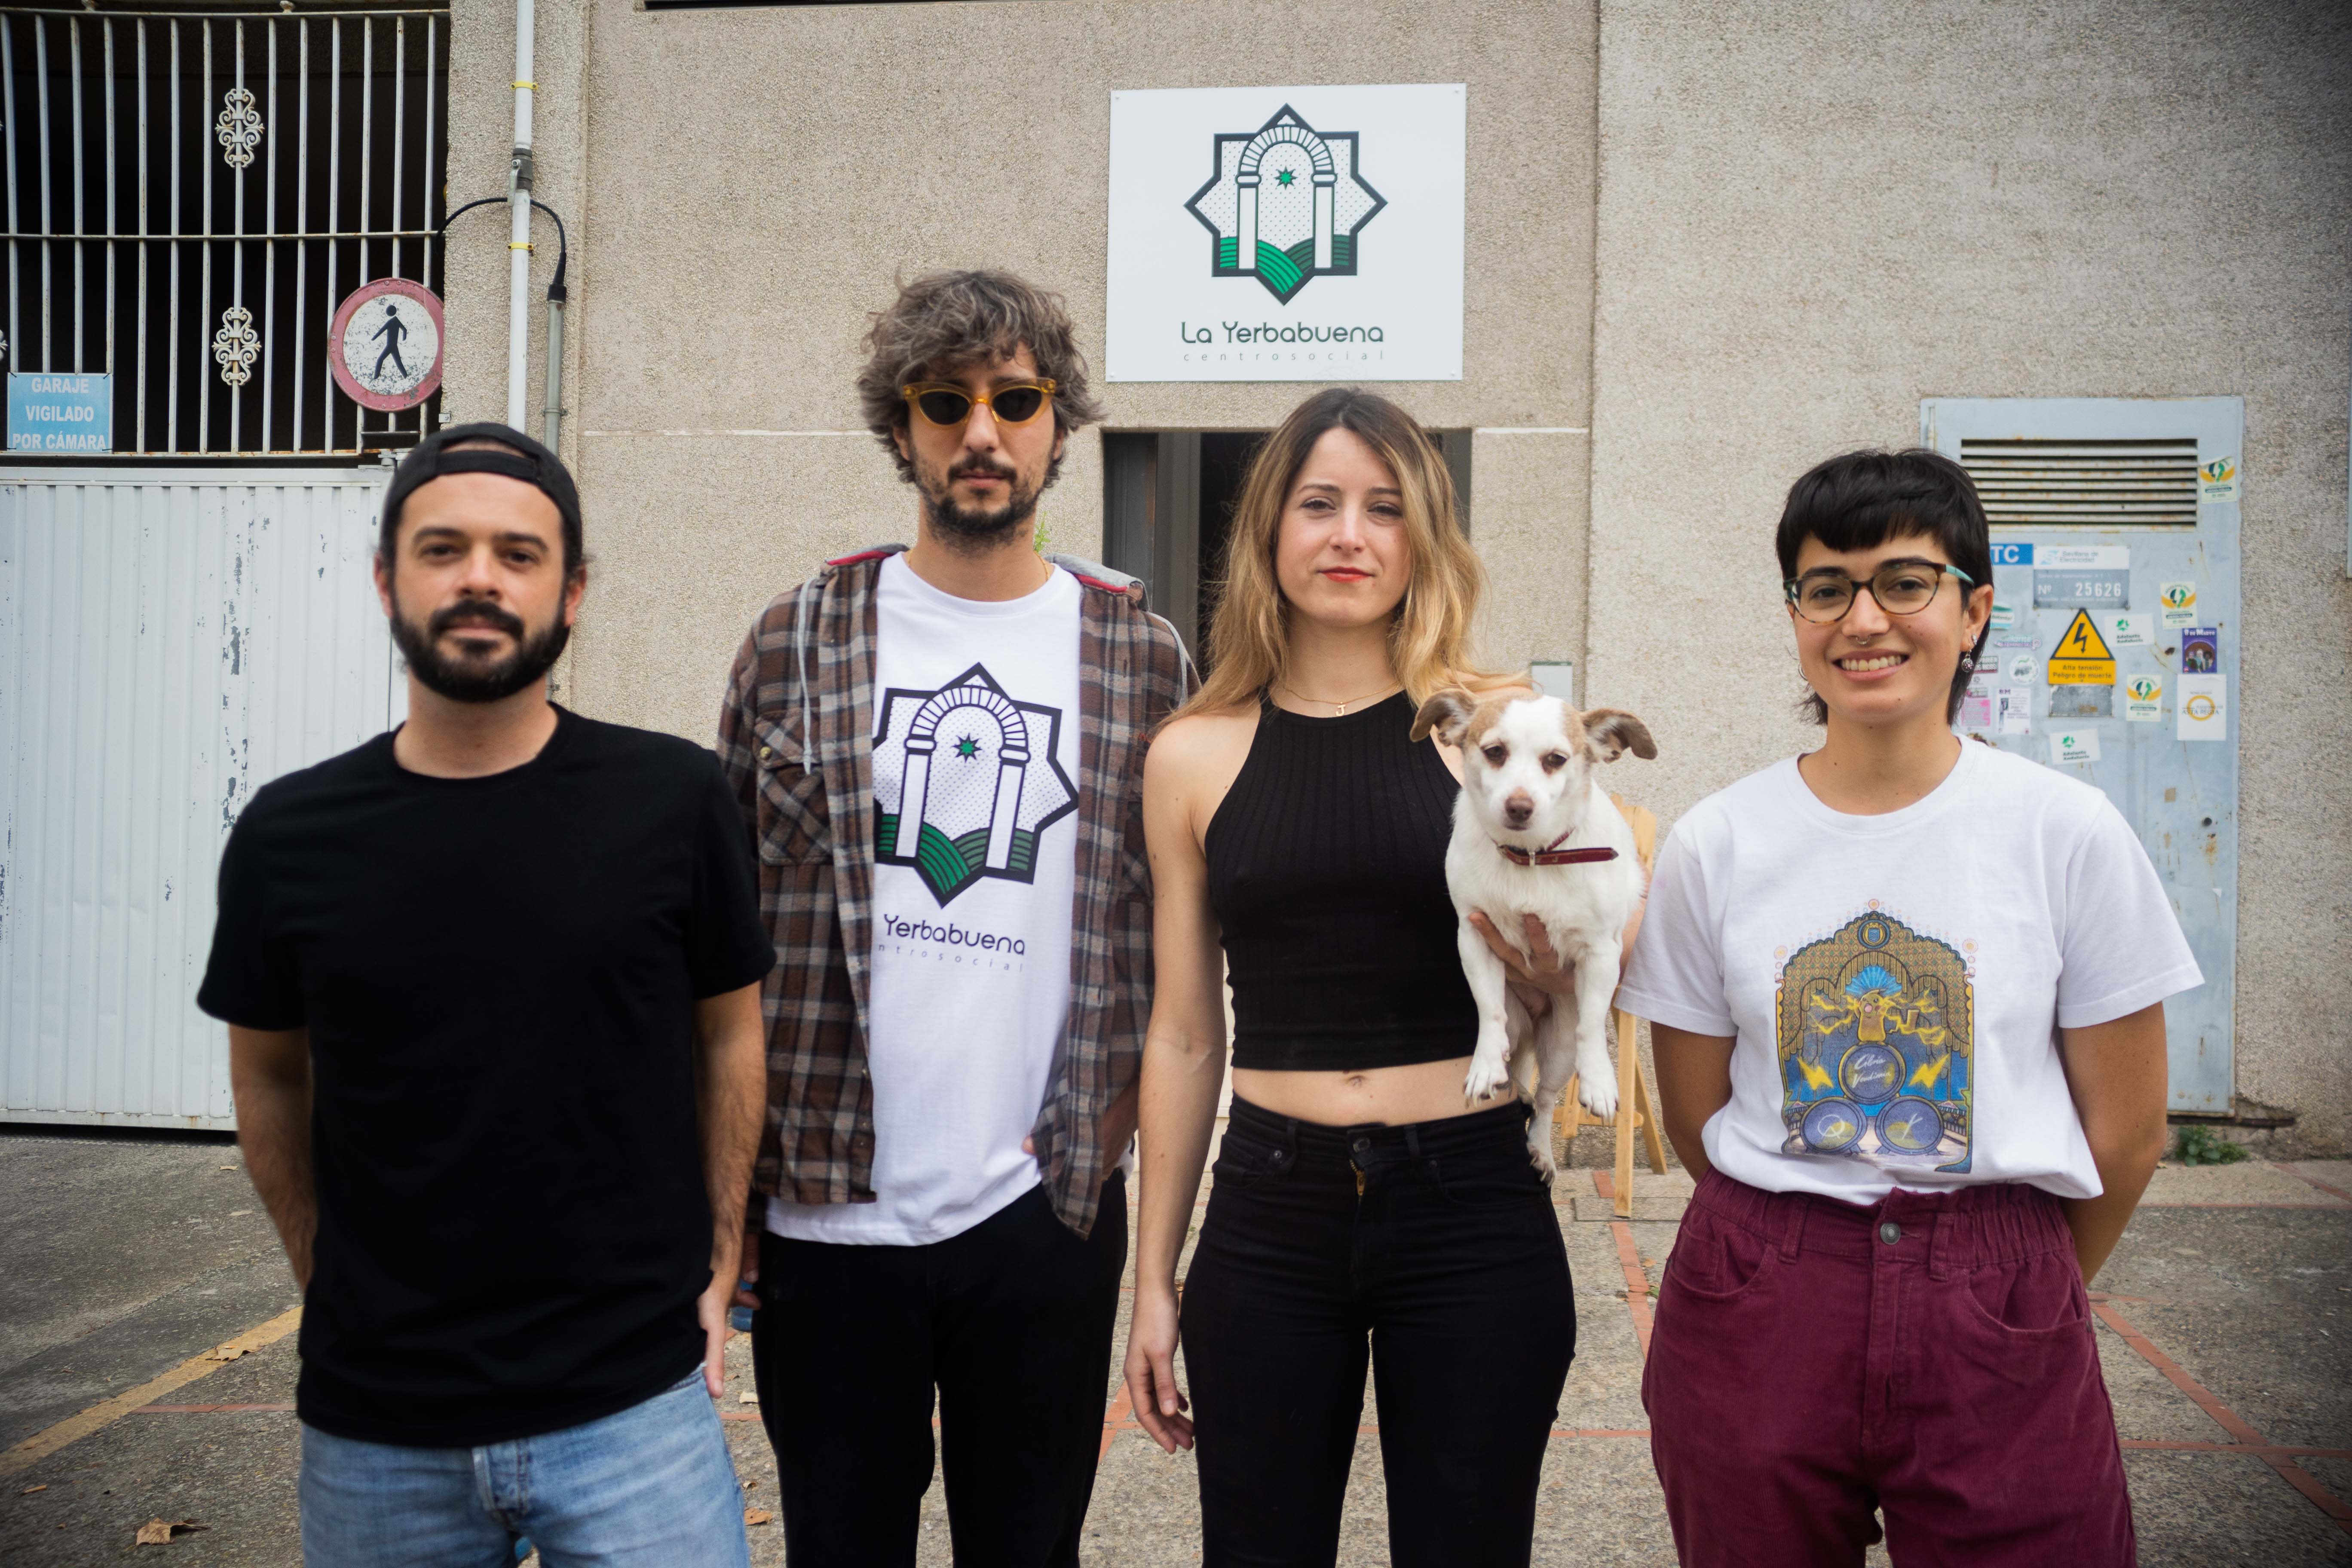 Gonzalo, Juanlu, Olga e Inma son algunos de los integrantes del Centro Social La Yerbabuena, un espacio autogestionado en el centro de Jerez